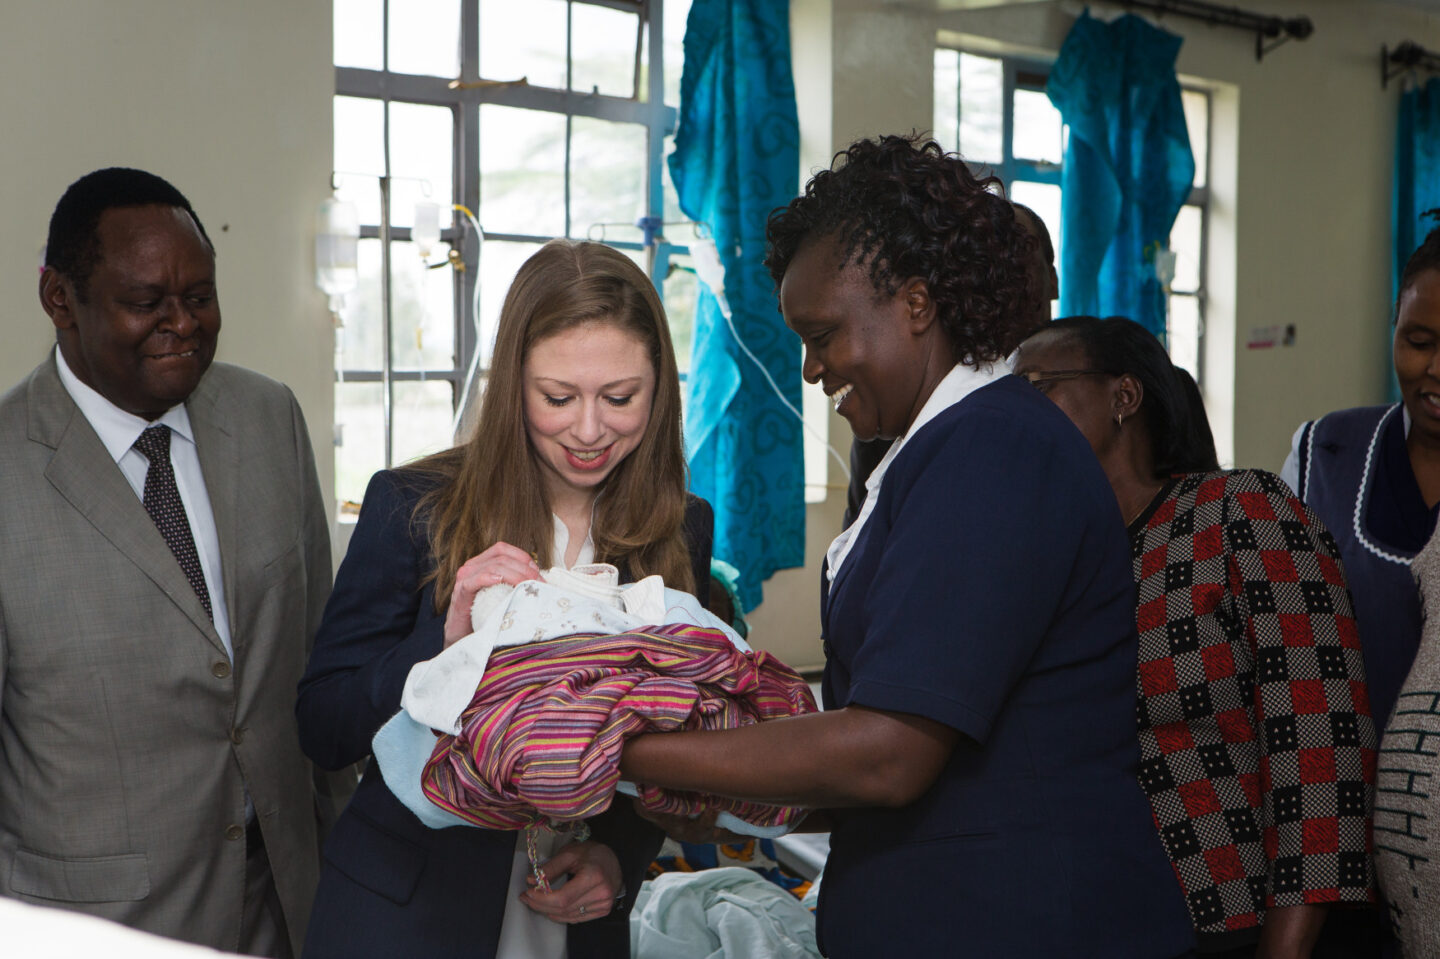 Chelsea Clinton meets with several individuals in Nairobi, Kenya